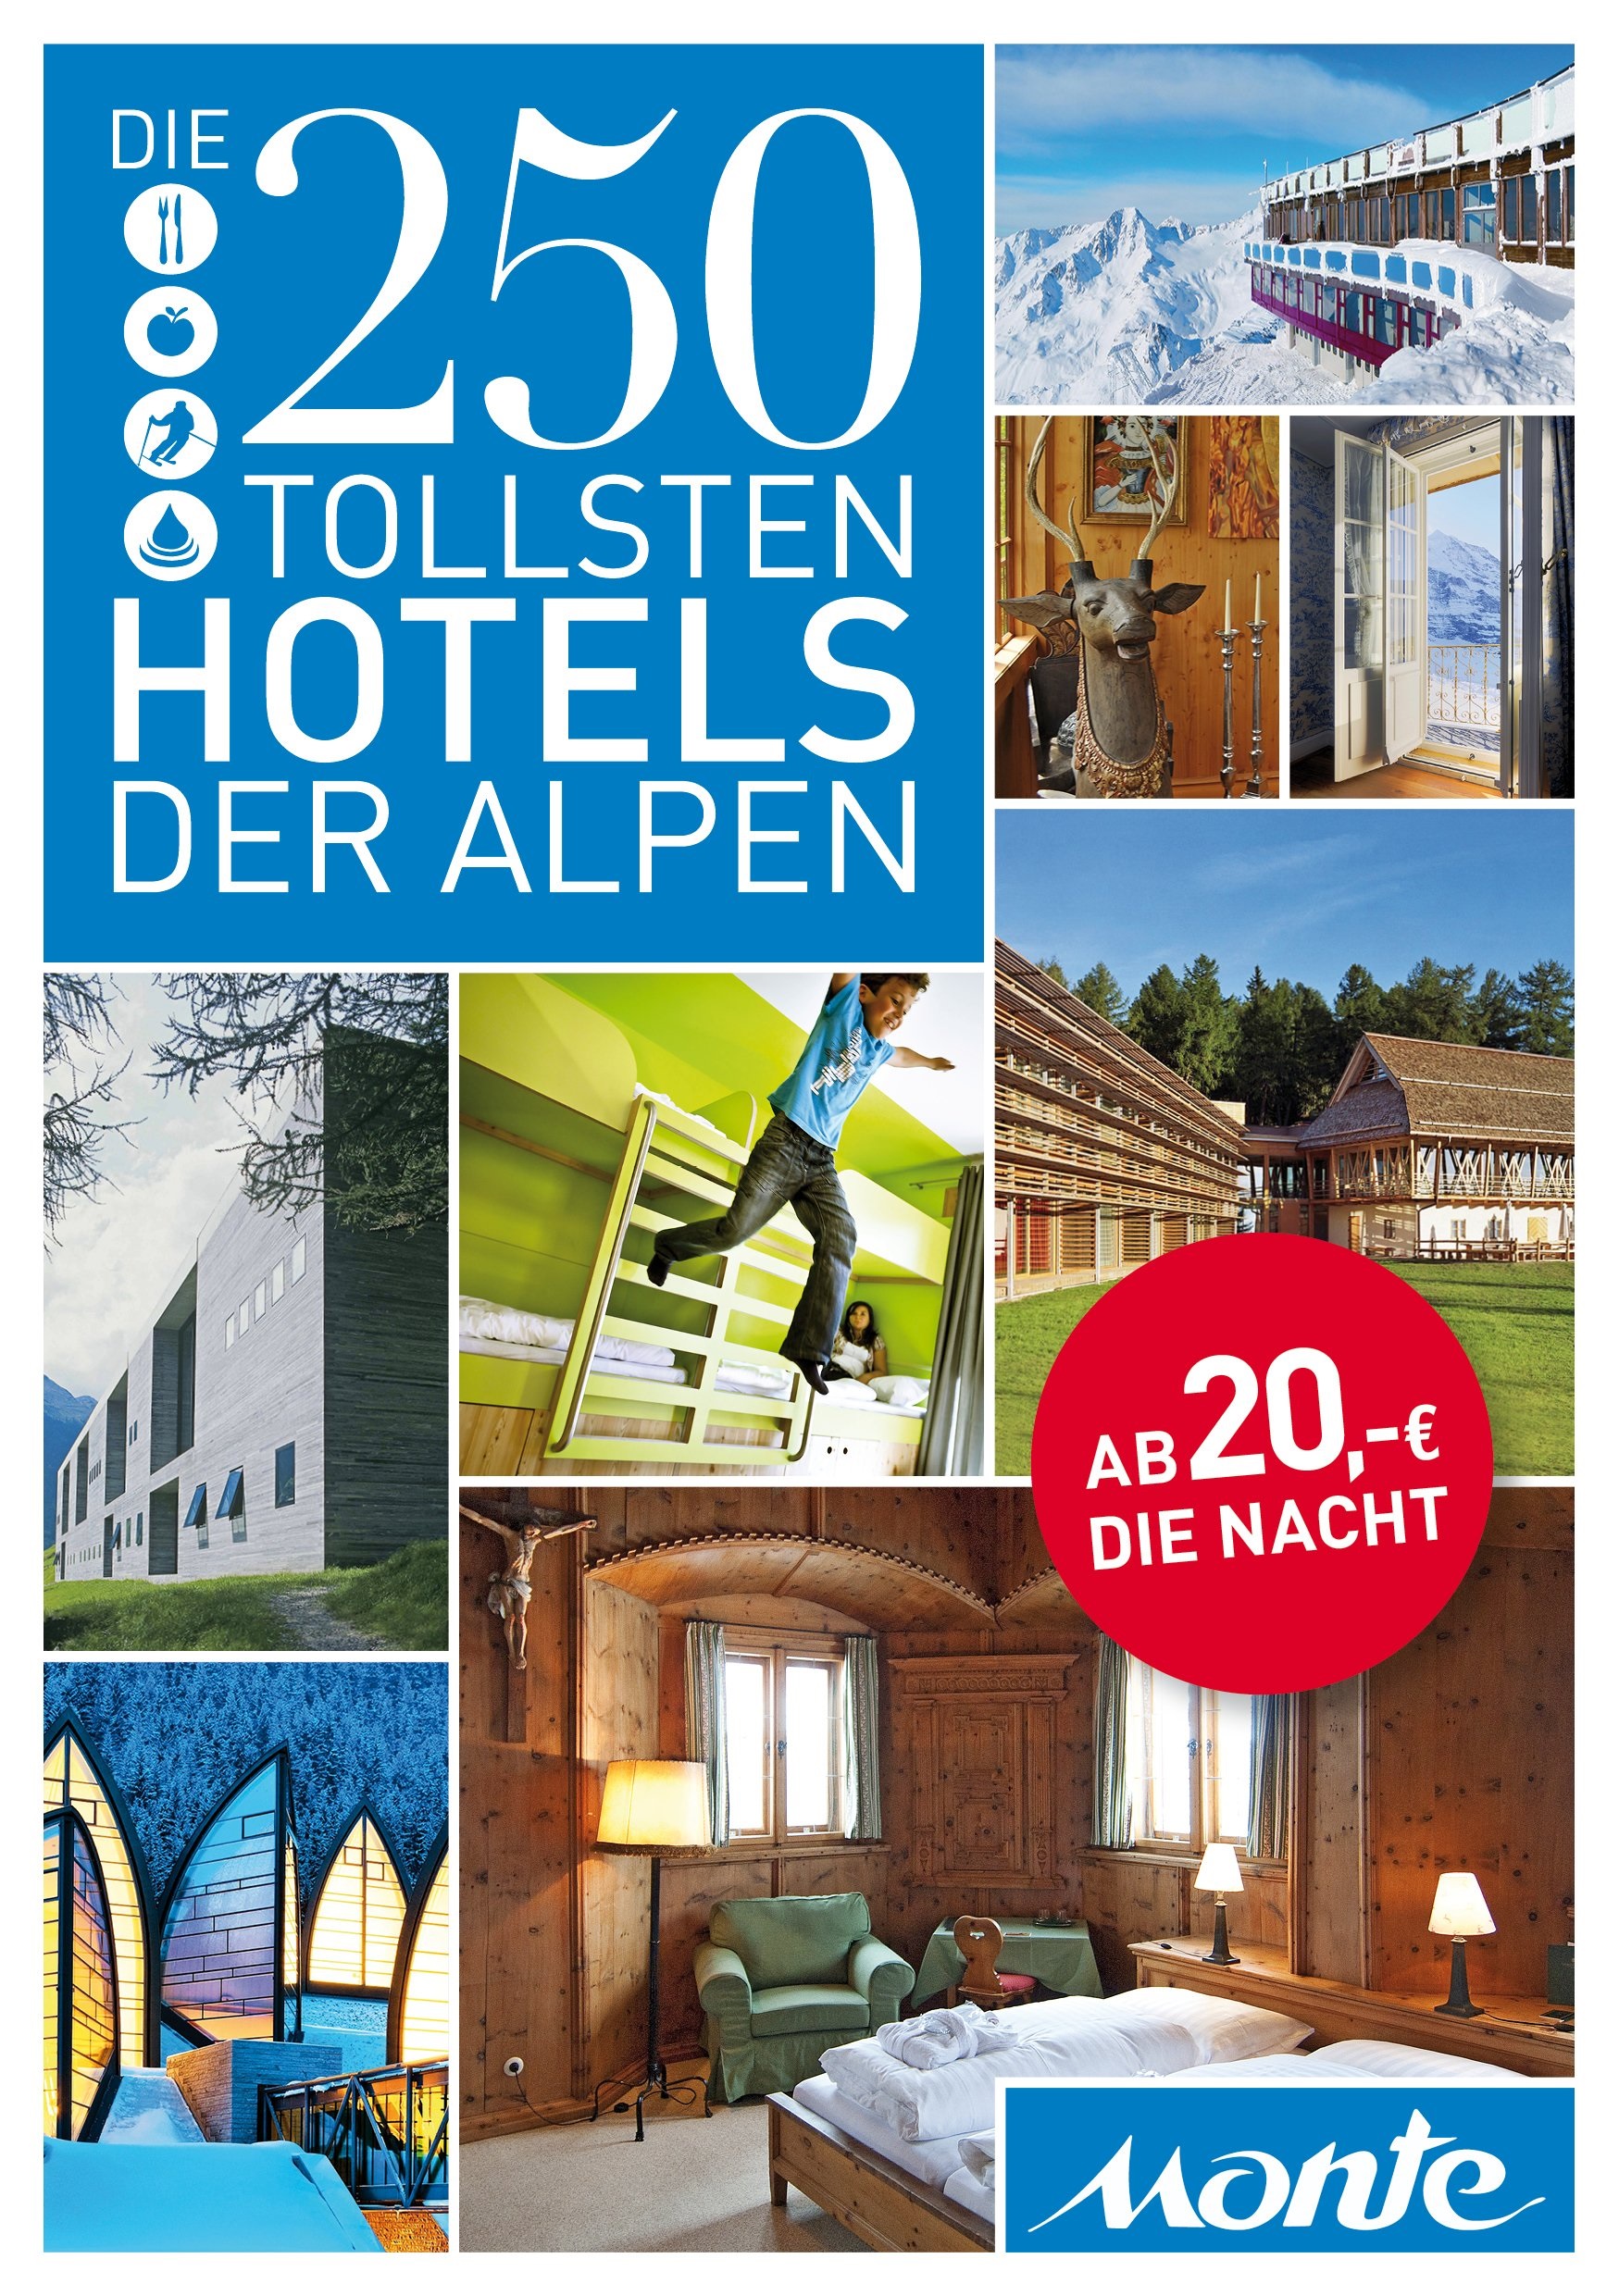 Geheimtipp – Die 250 tollsten Hotels in den Alpen